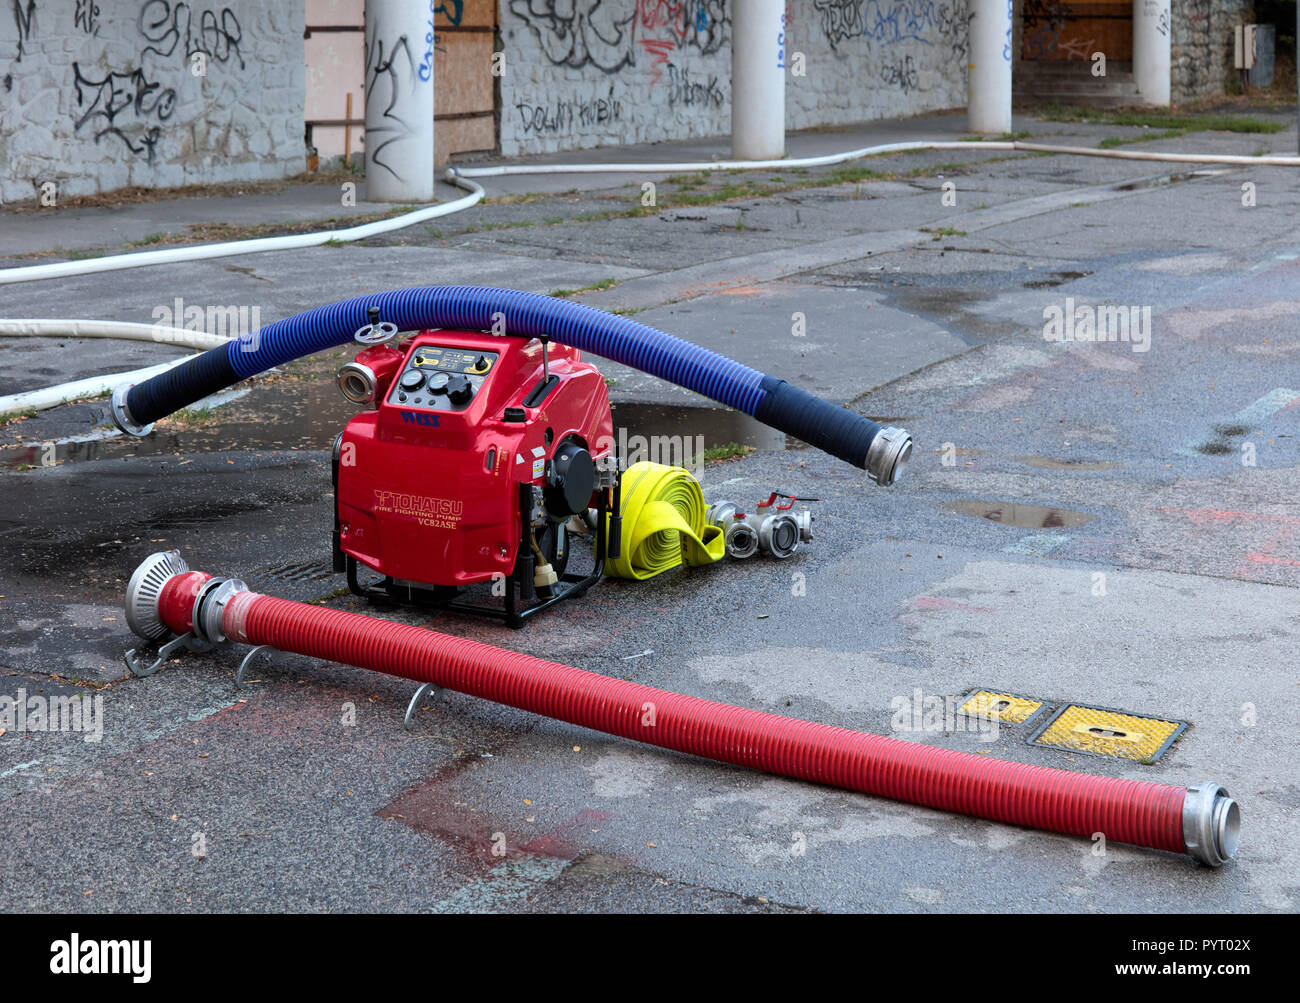 Kompressor und Brandbekämpfung Schläuche in einer Übung der Feuerwehrmann Freiwillige in Devin, Bratislava, Slowakei verwendet Stockfoto